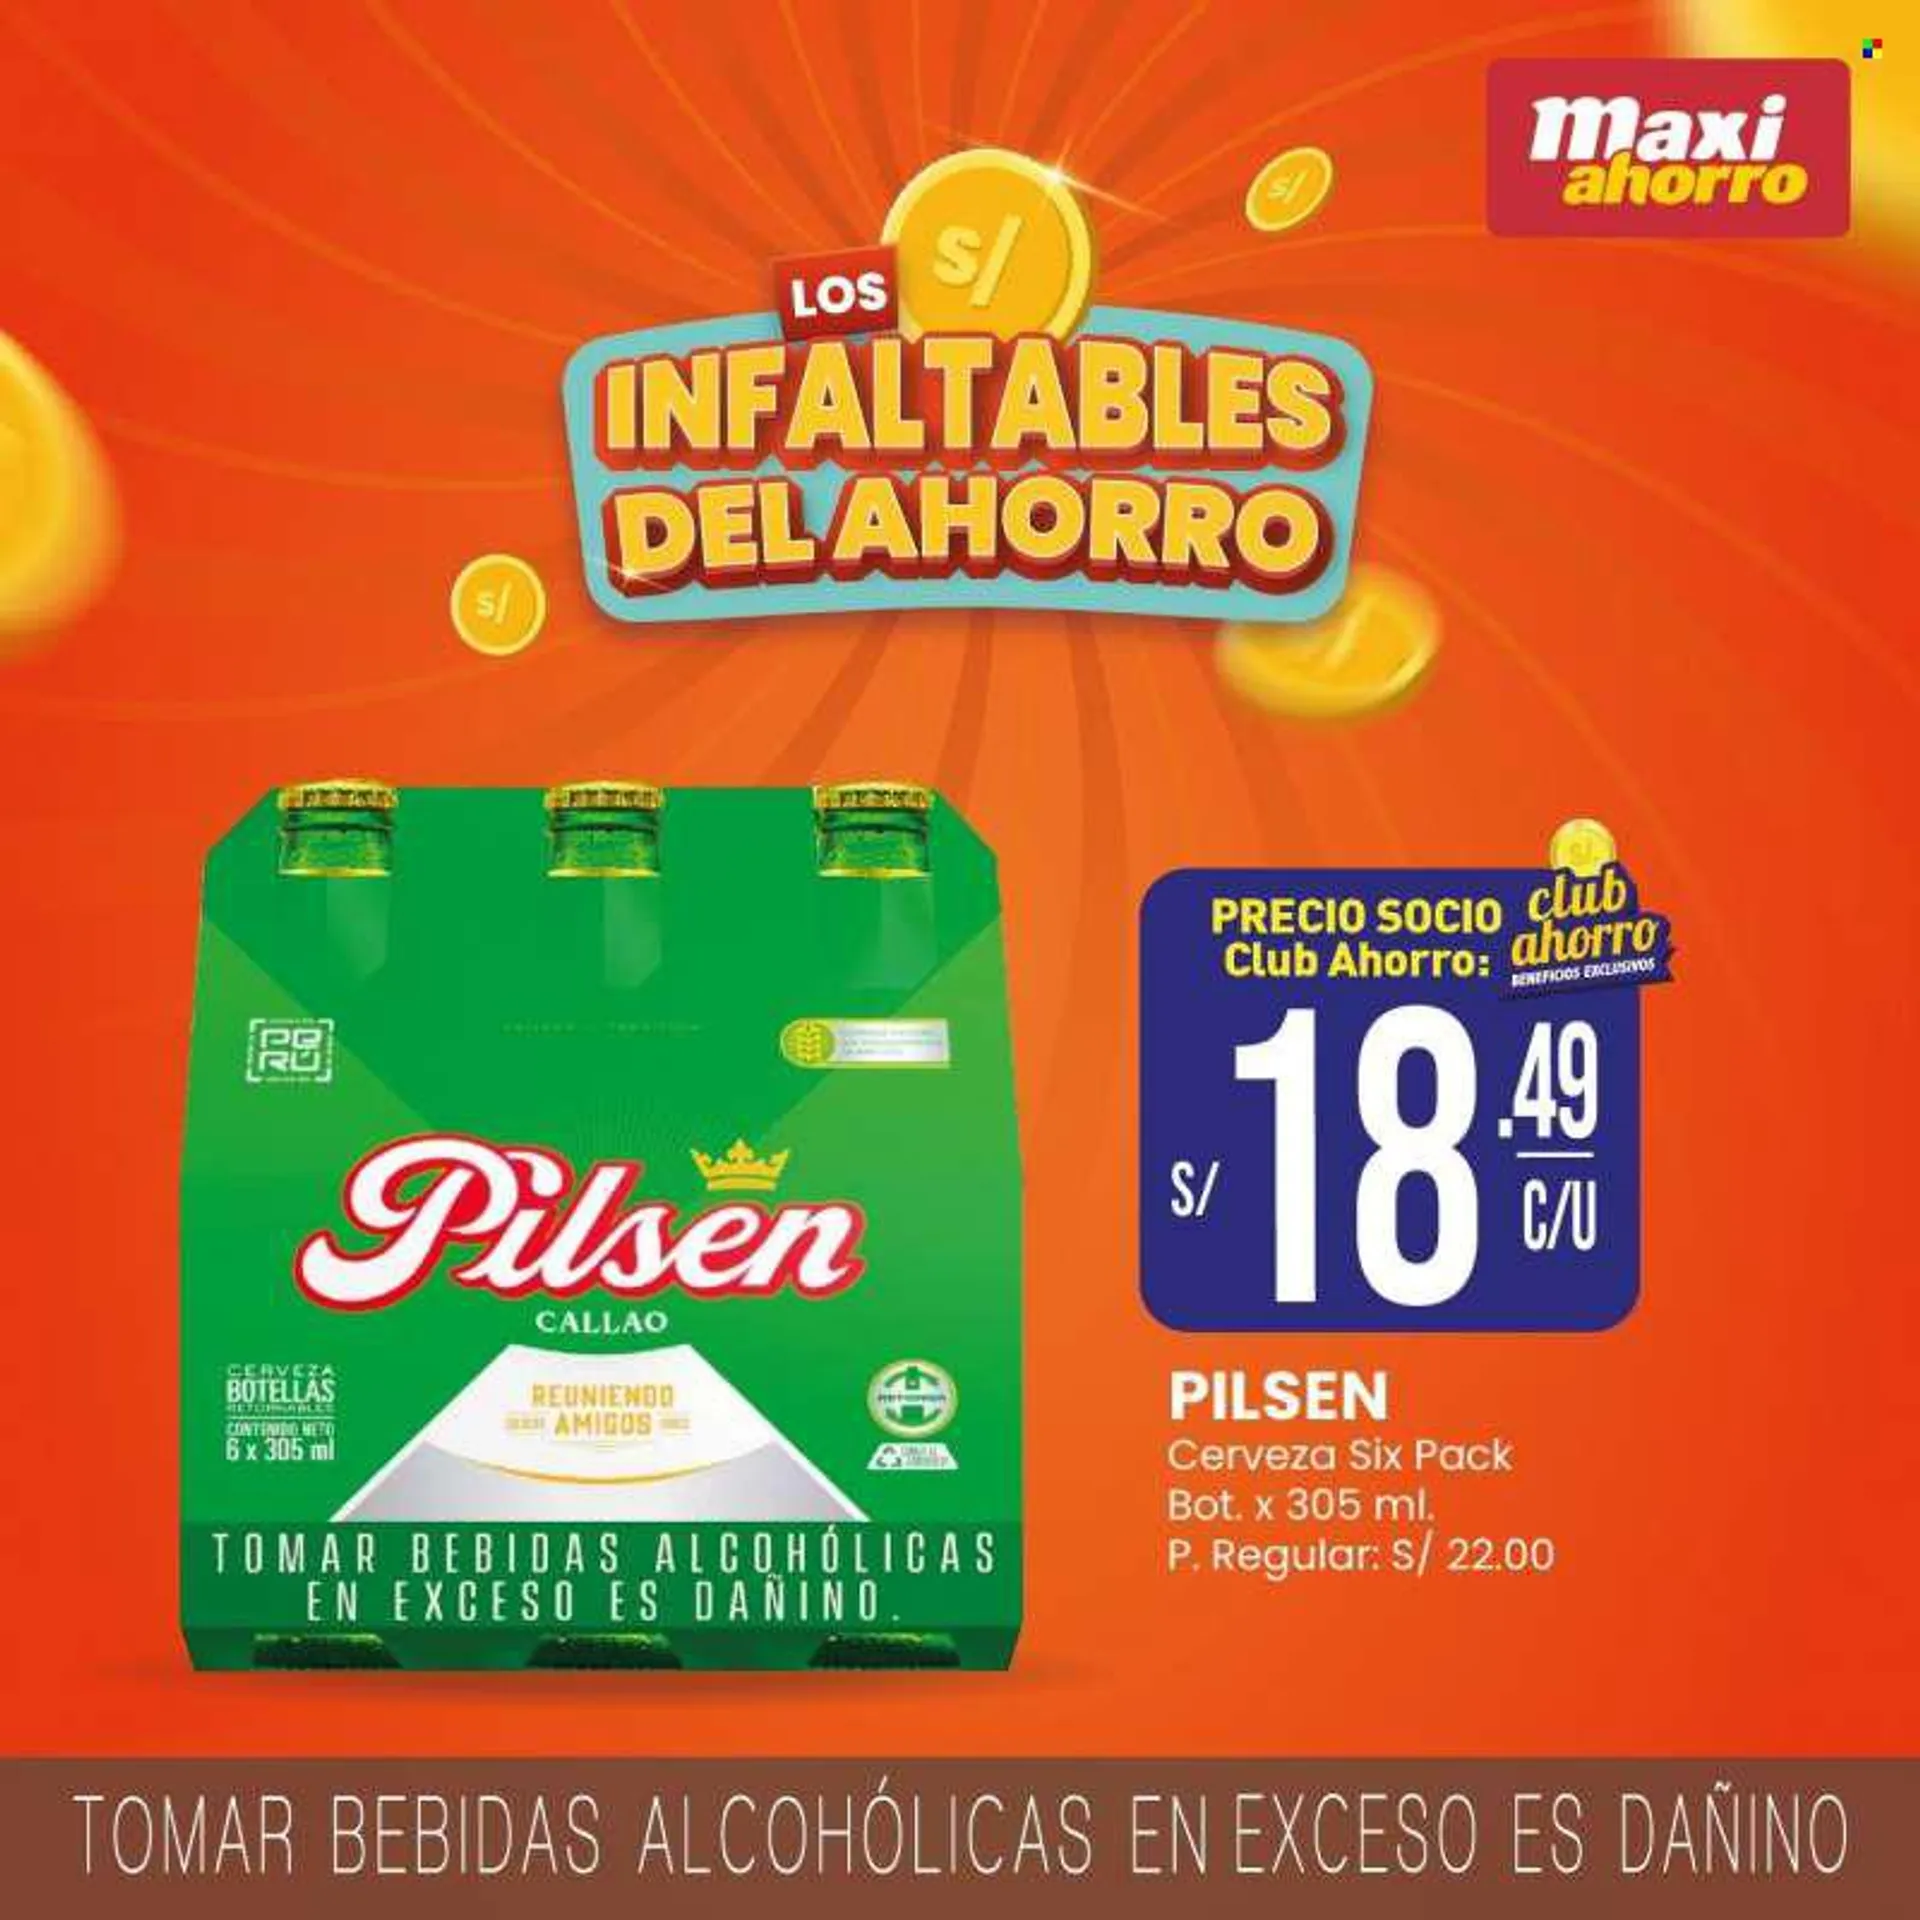 Folleto actual Maxi ahorro - Ventas - Pilsen, cerveza, bebida, bebida alcohólica. Página 3.